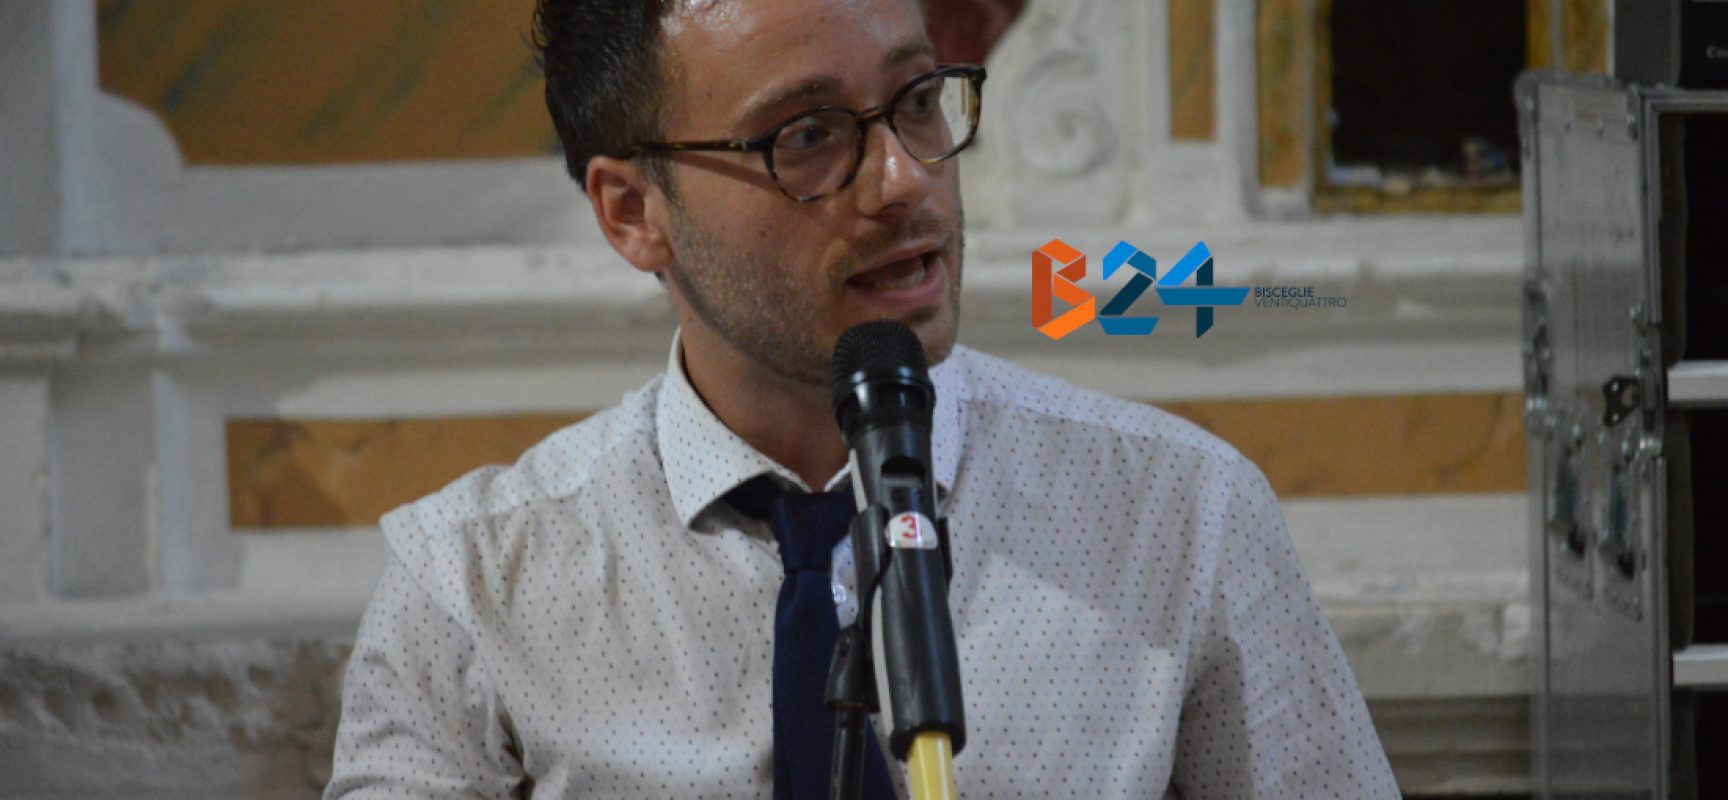 Giuseppe Losapio: “Debiti fuori bilancio riconducibili a scorse amministrazioni”